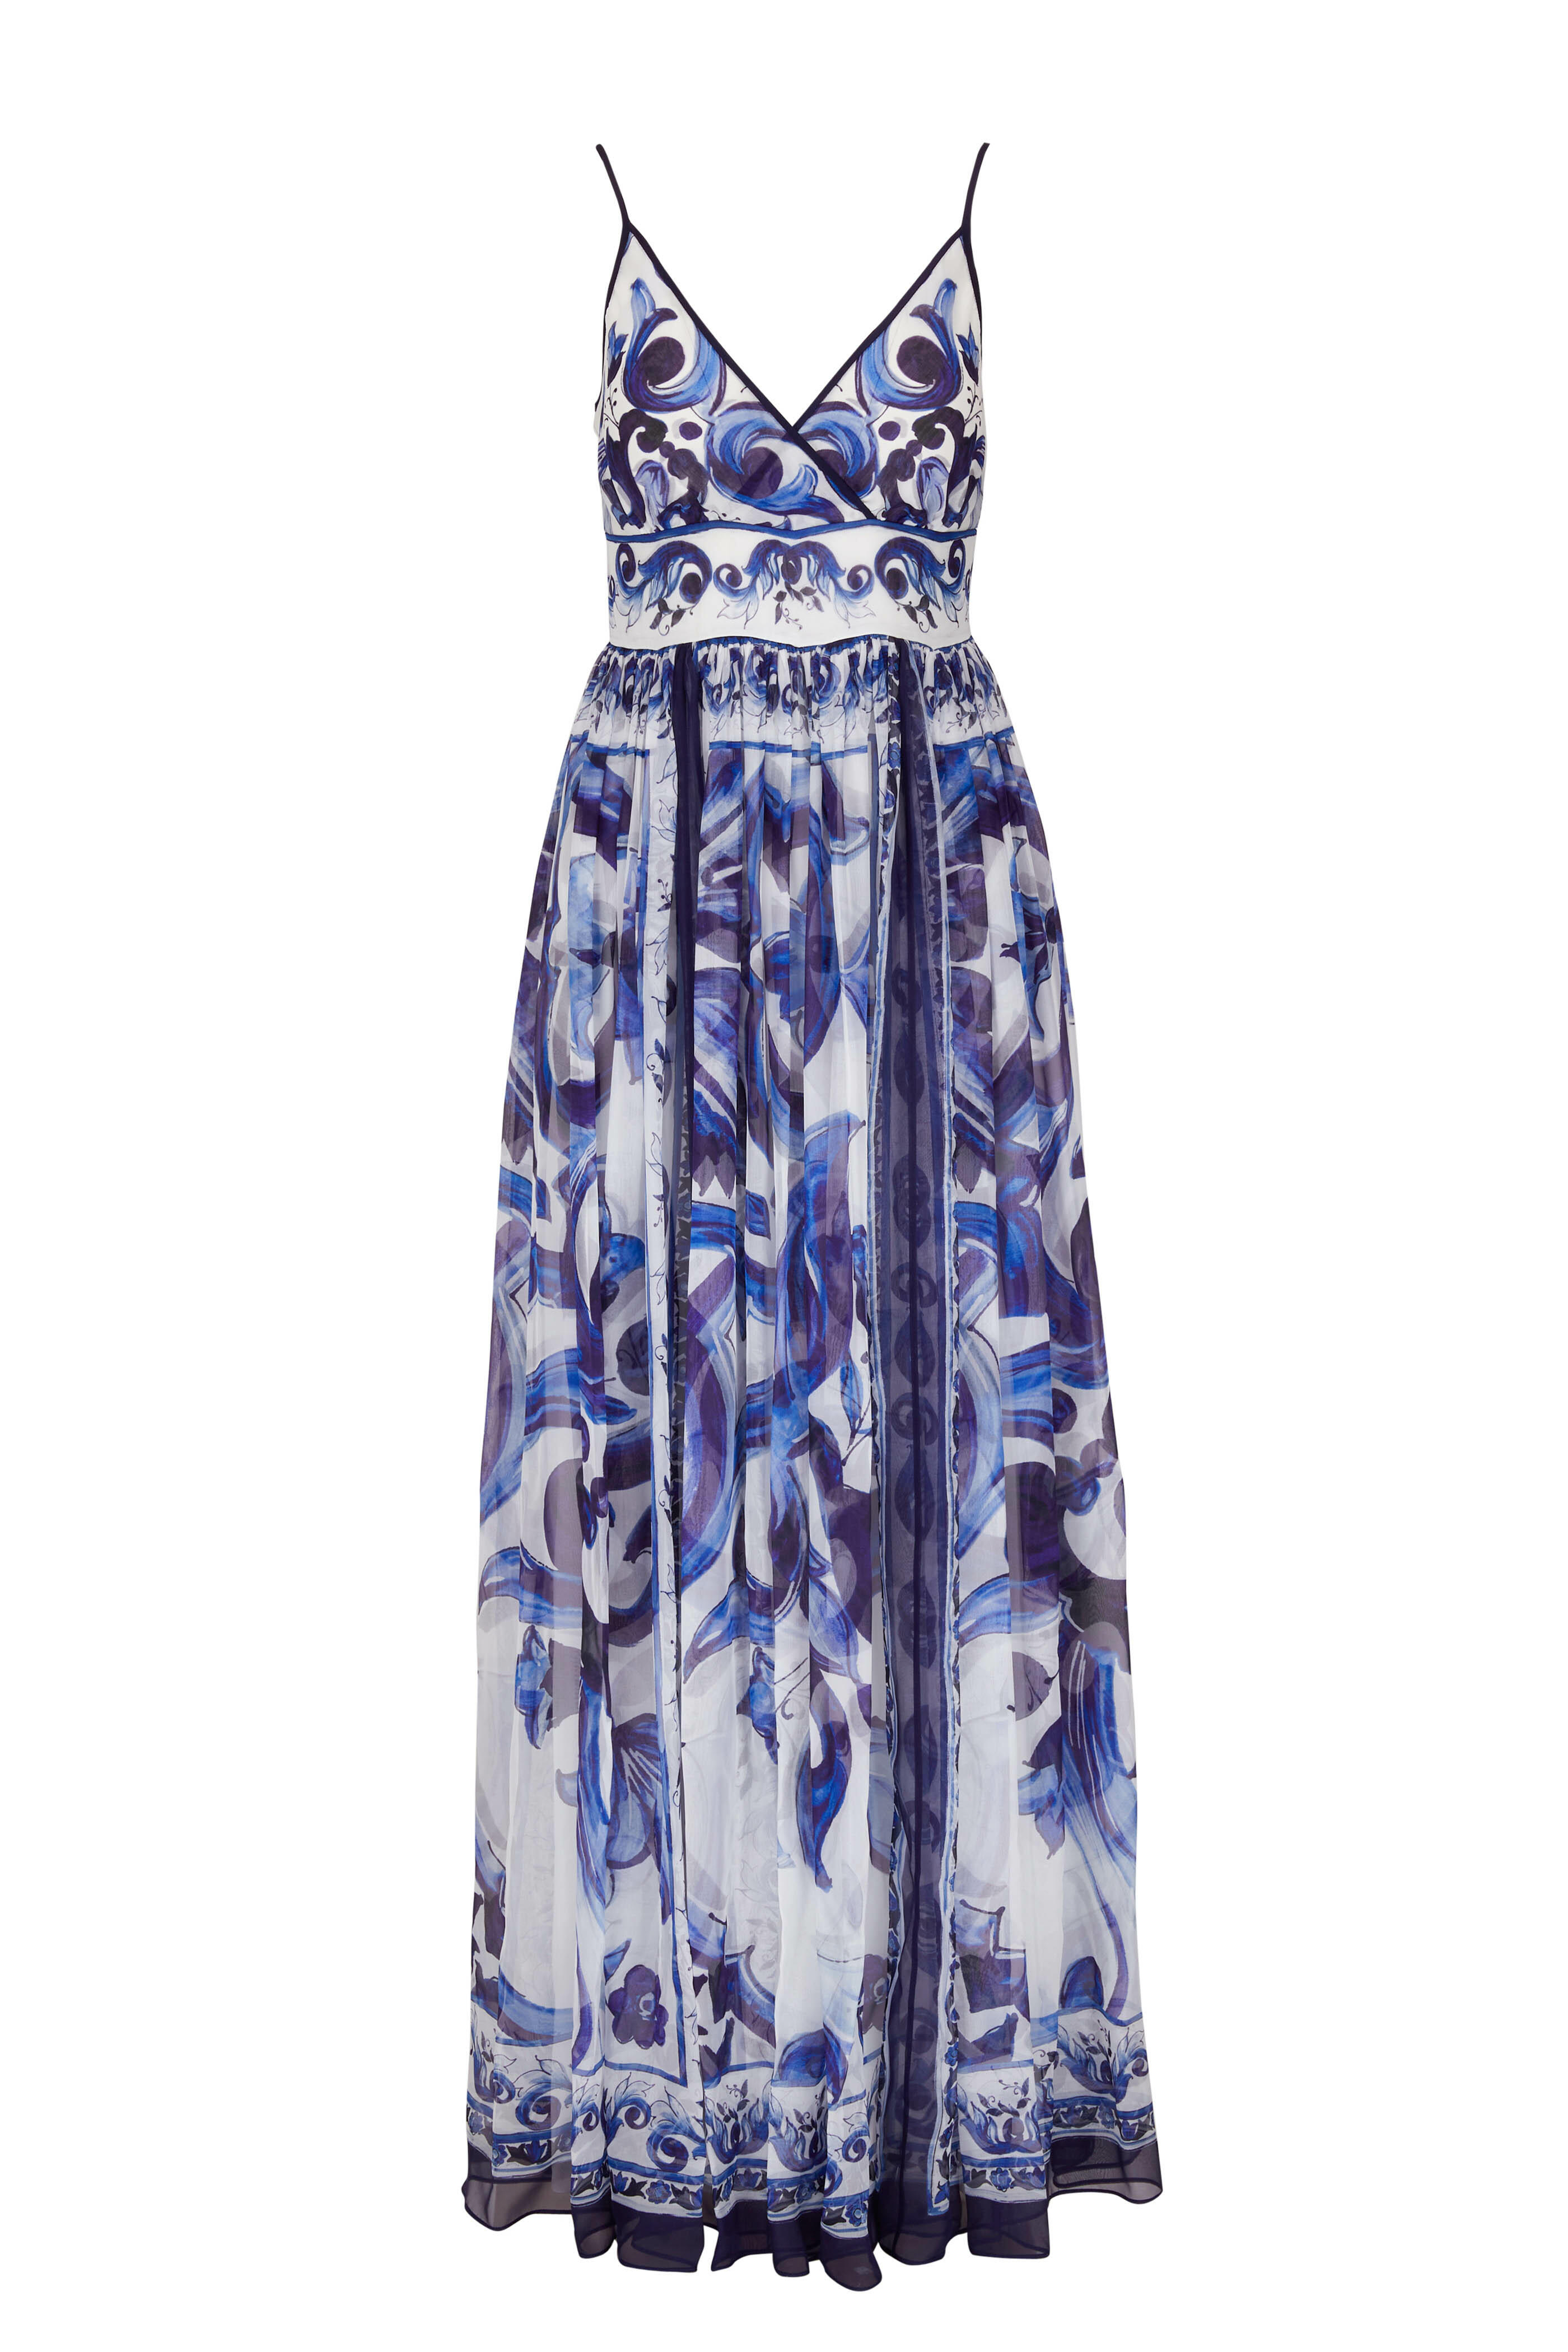 Majolica-print silk-chiffon dress, Dolce & Gabbana